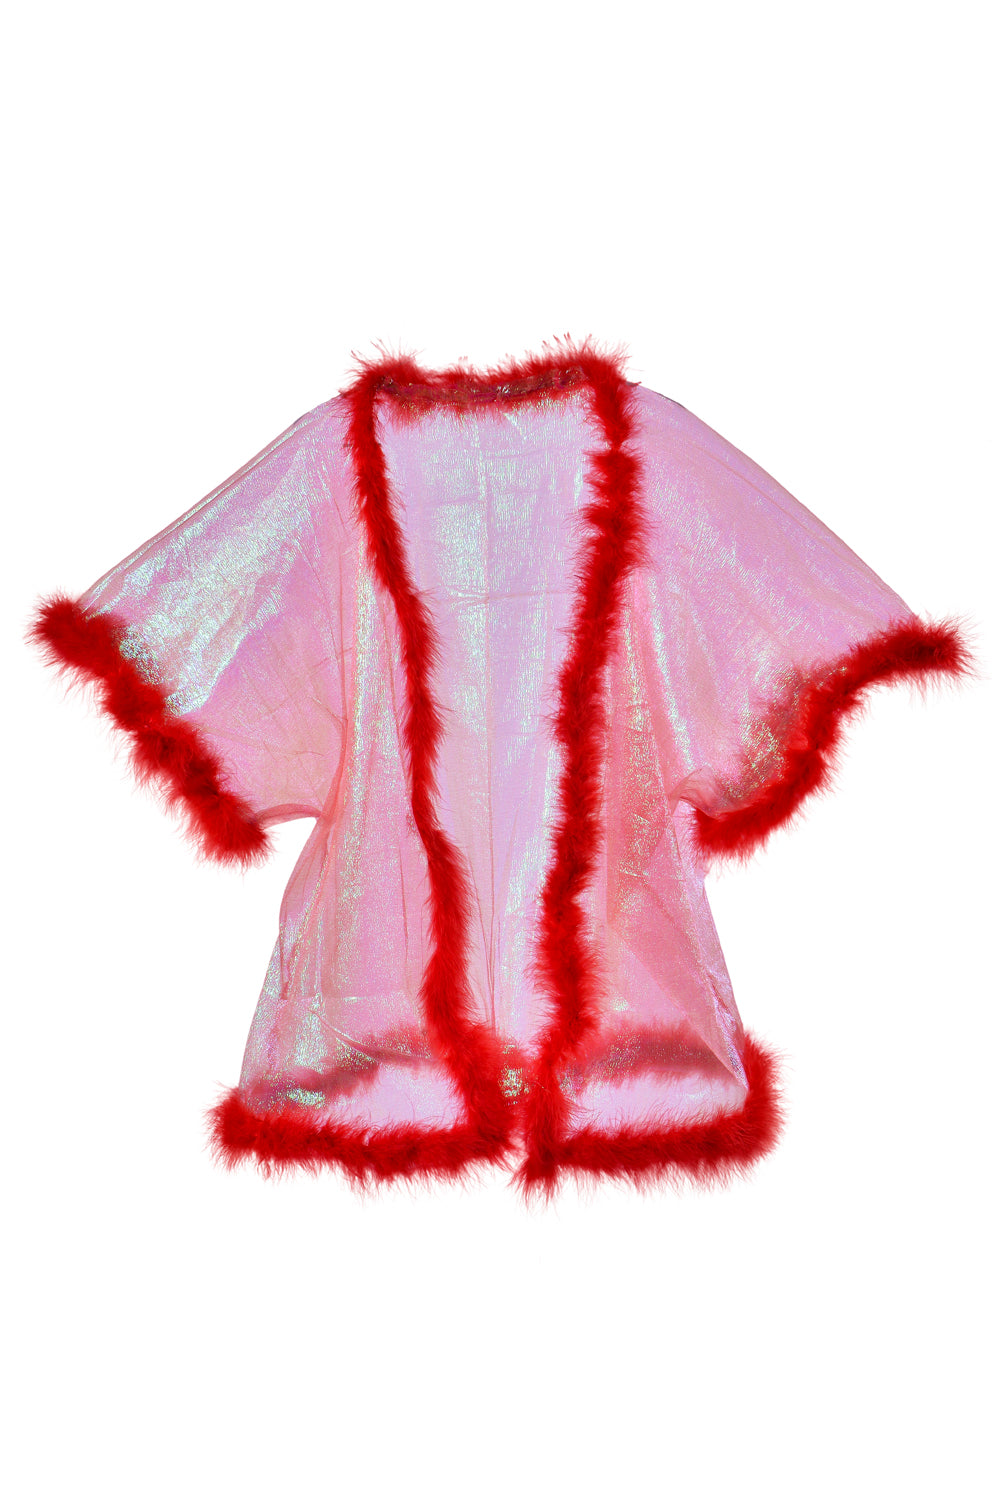 Fuzzy Kimono- Cherry Dreams